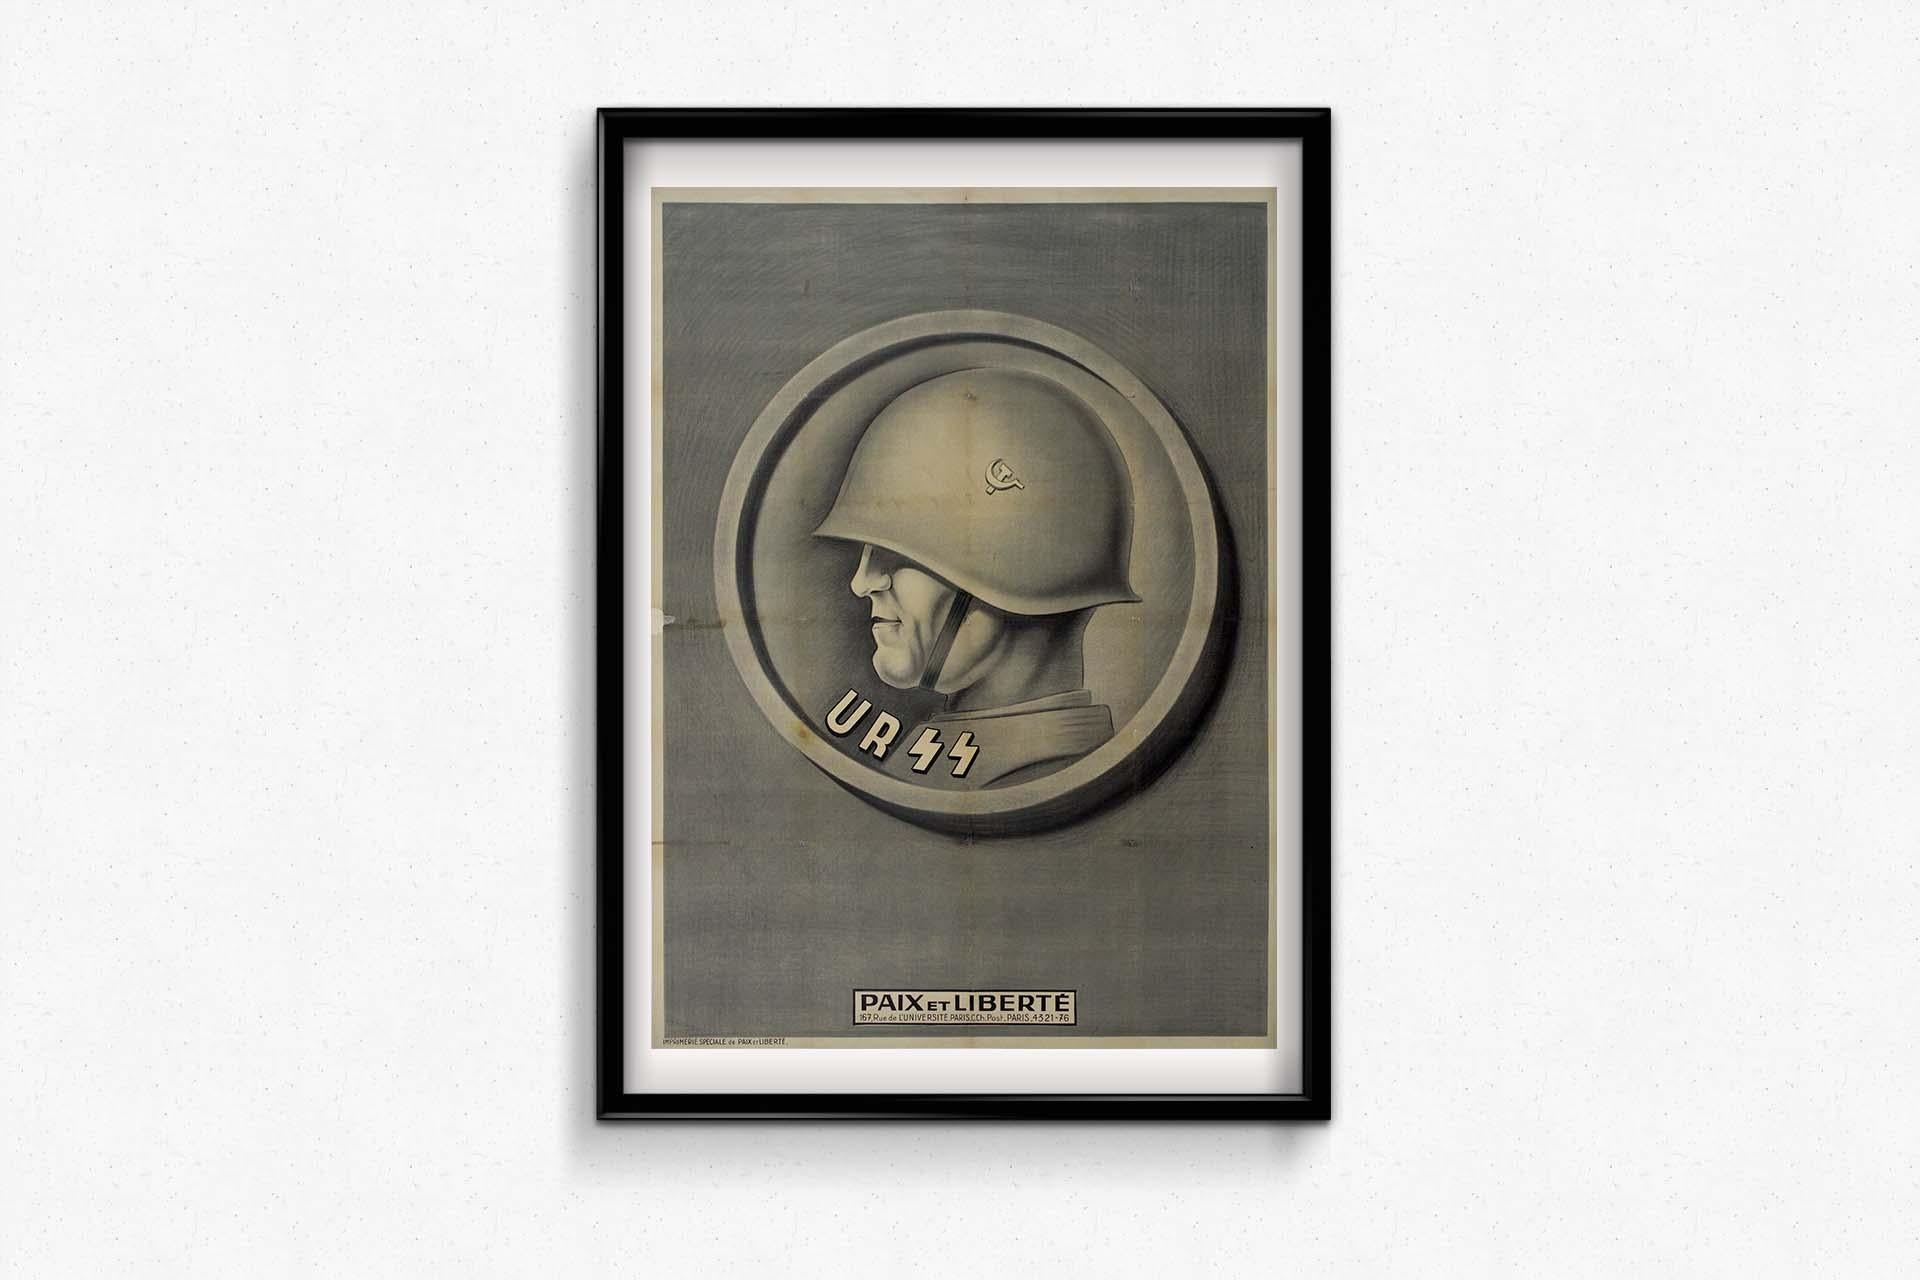 Original poster by Paix et liberté - URSS - USSR - Propaganda For Sale 2